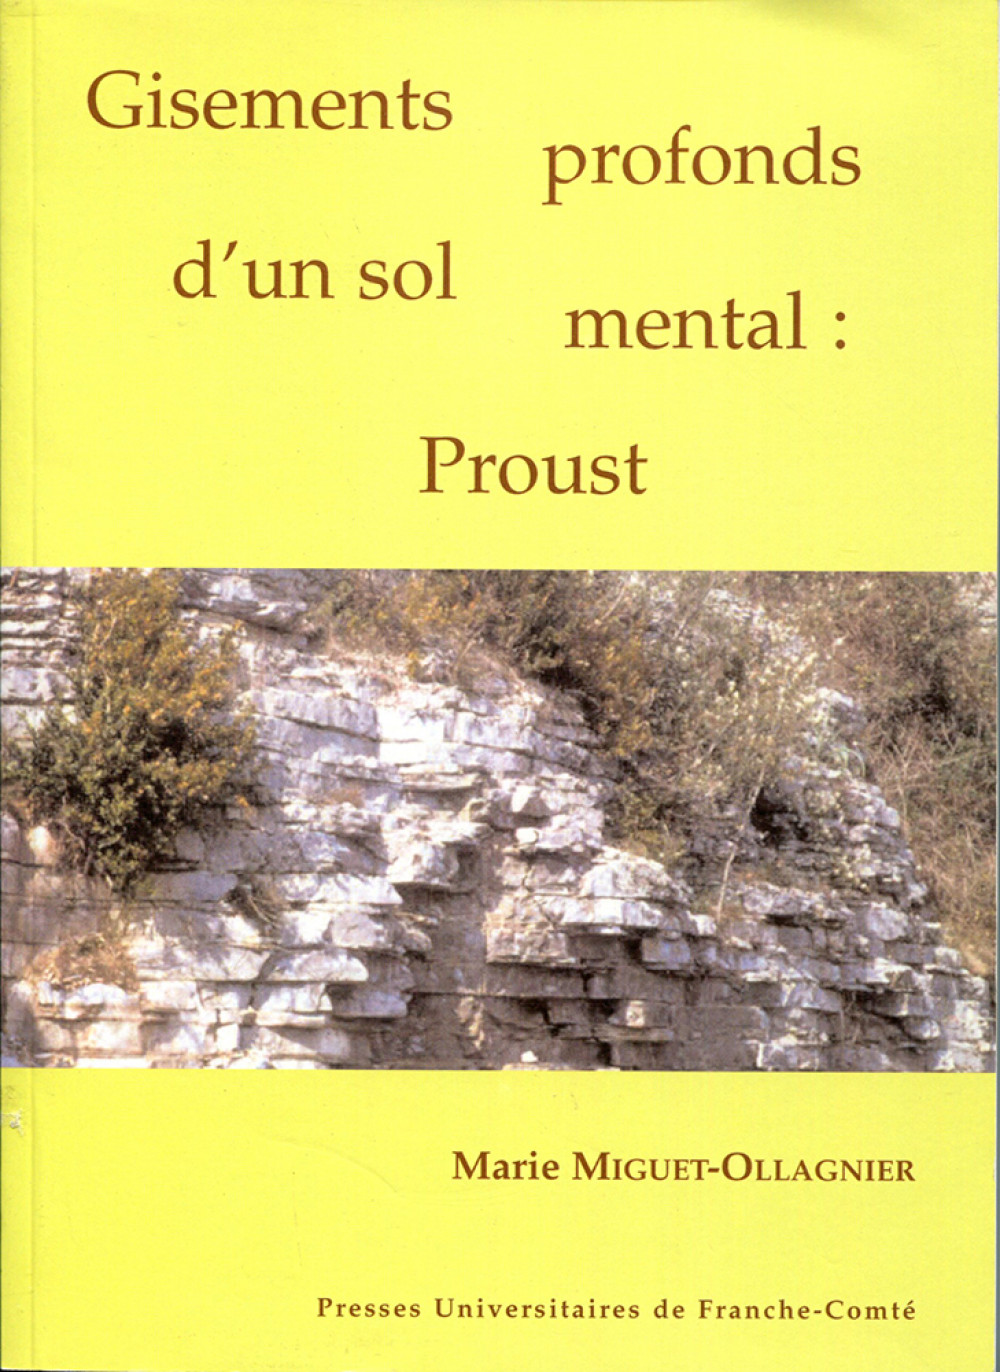 Gisements profonds d'un sol mental : Proust